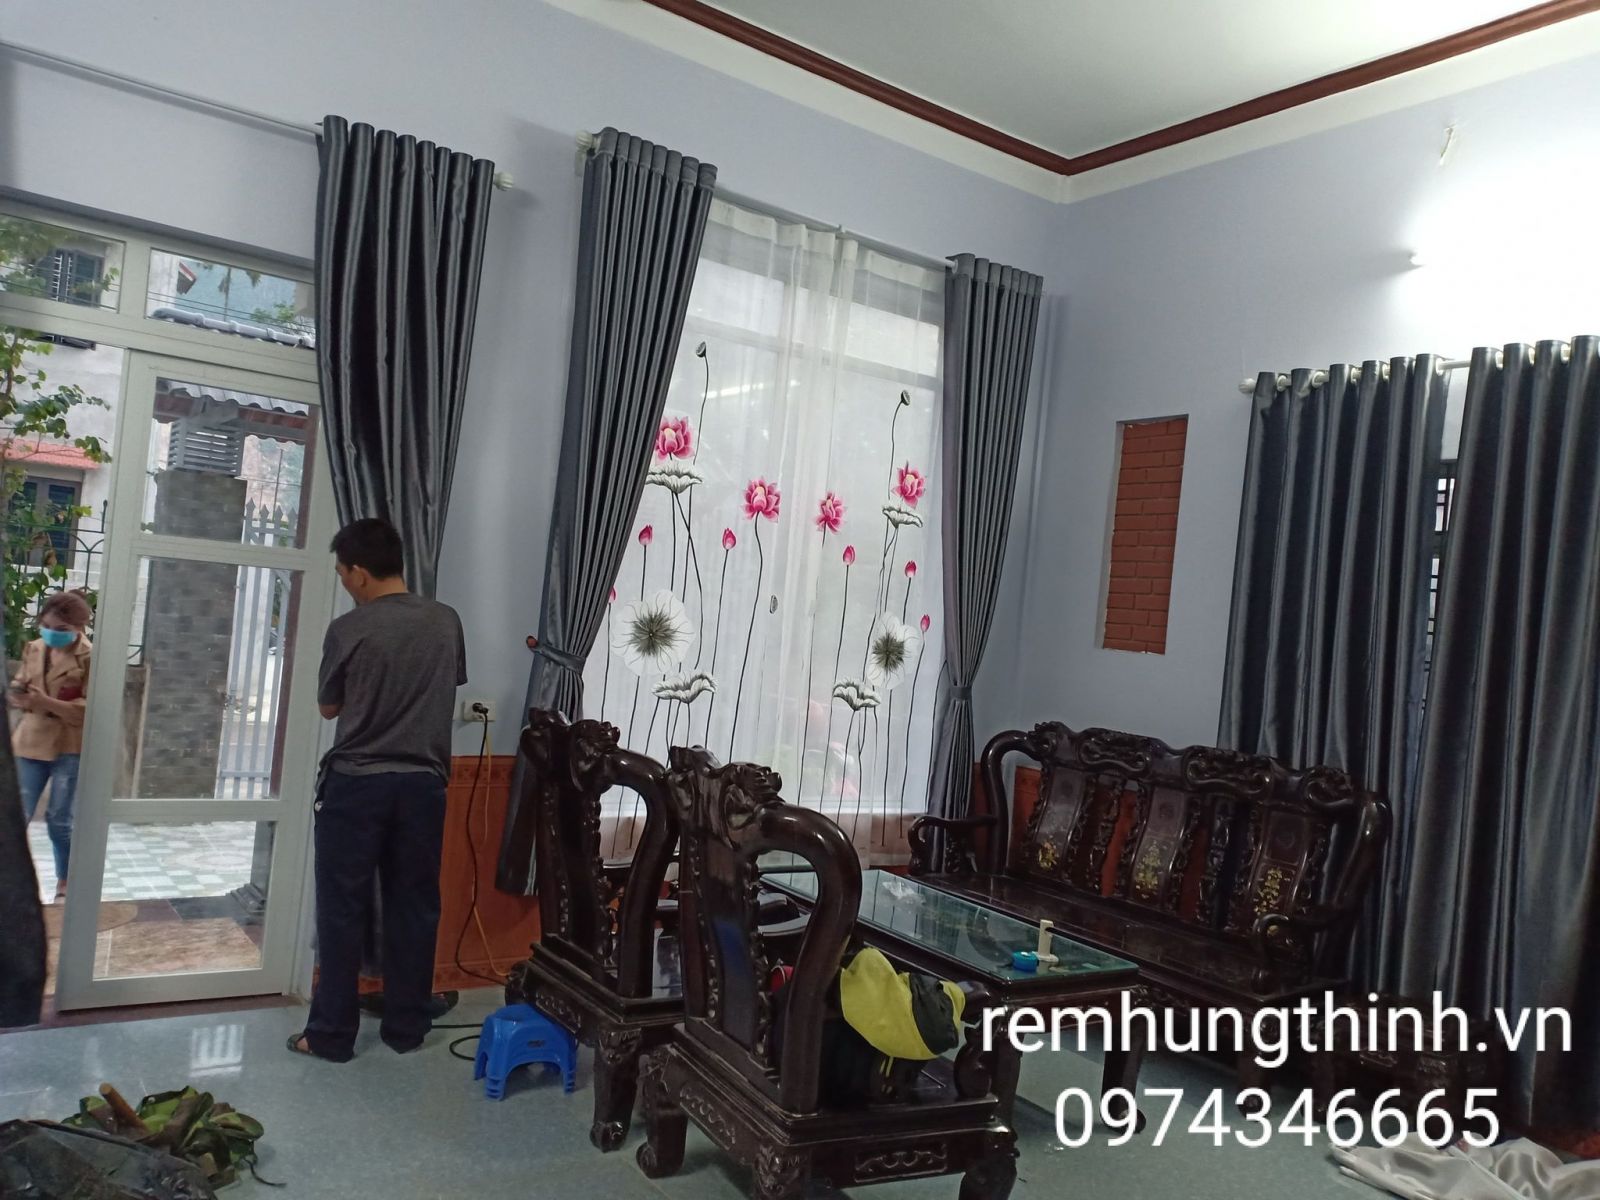 Rèm vải 2 lớp thêu tay hoạ tiết tại phường Nhân Chính quận Thanh Xuân